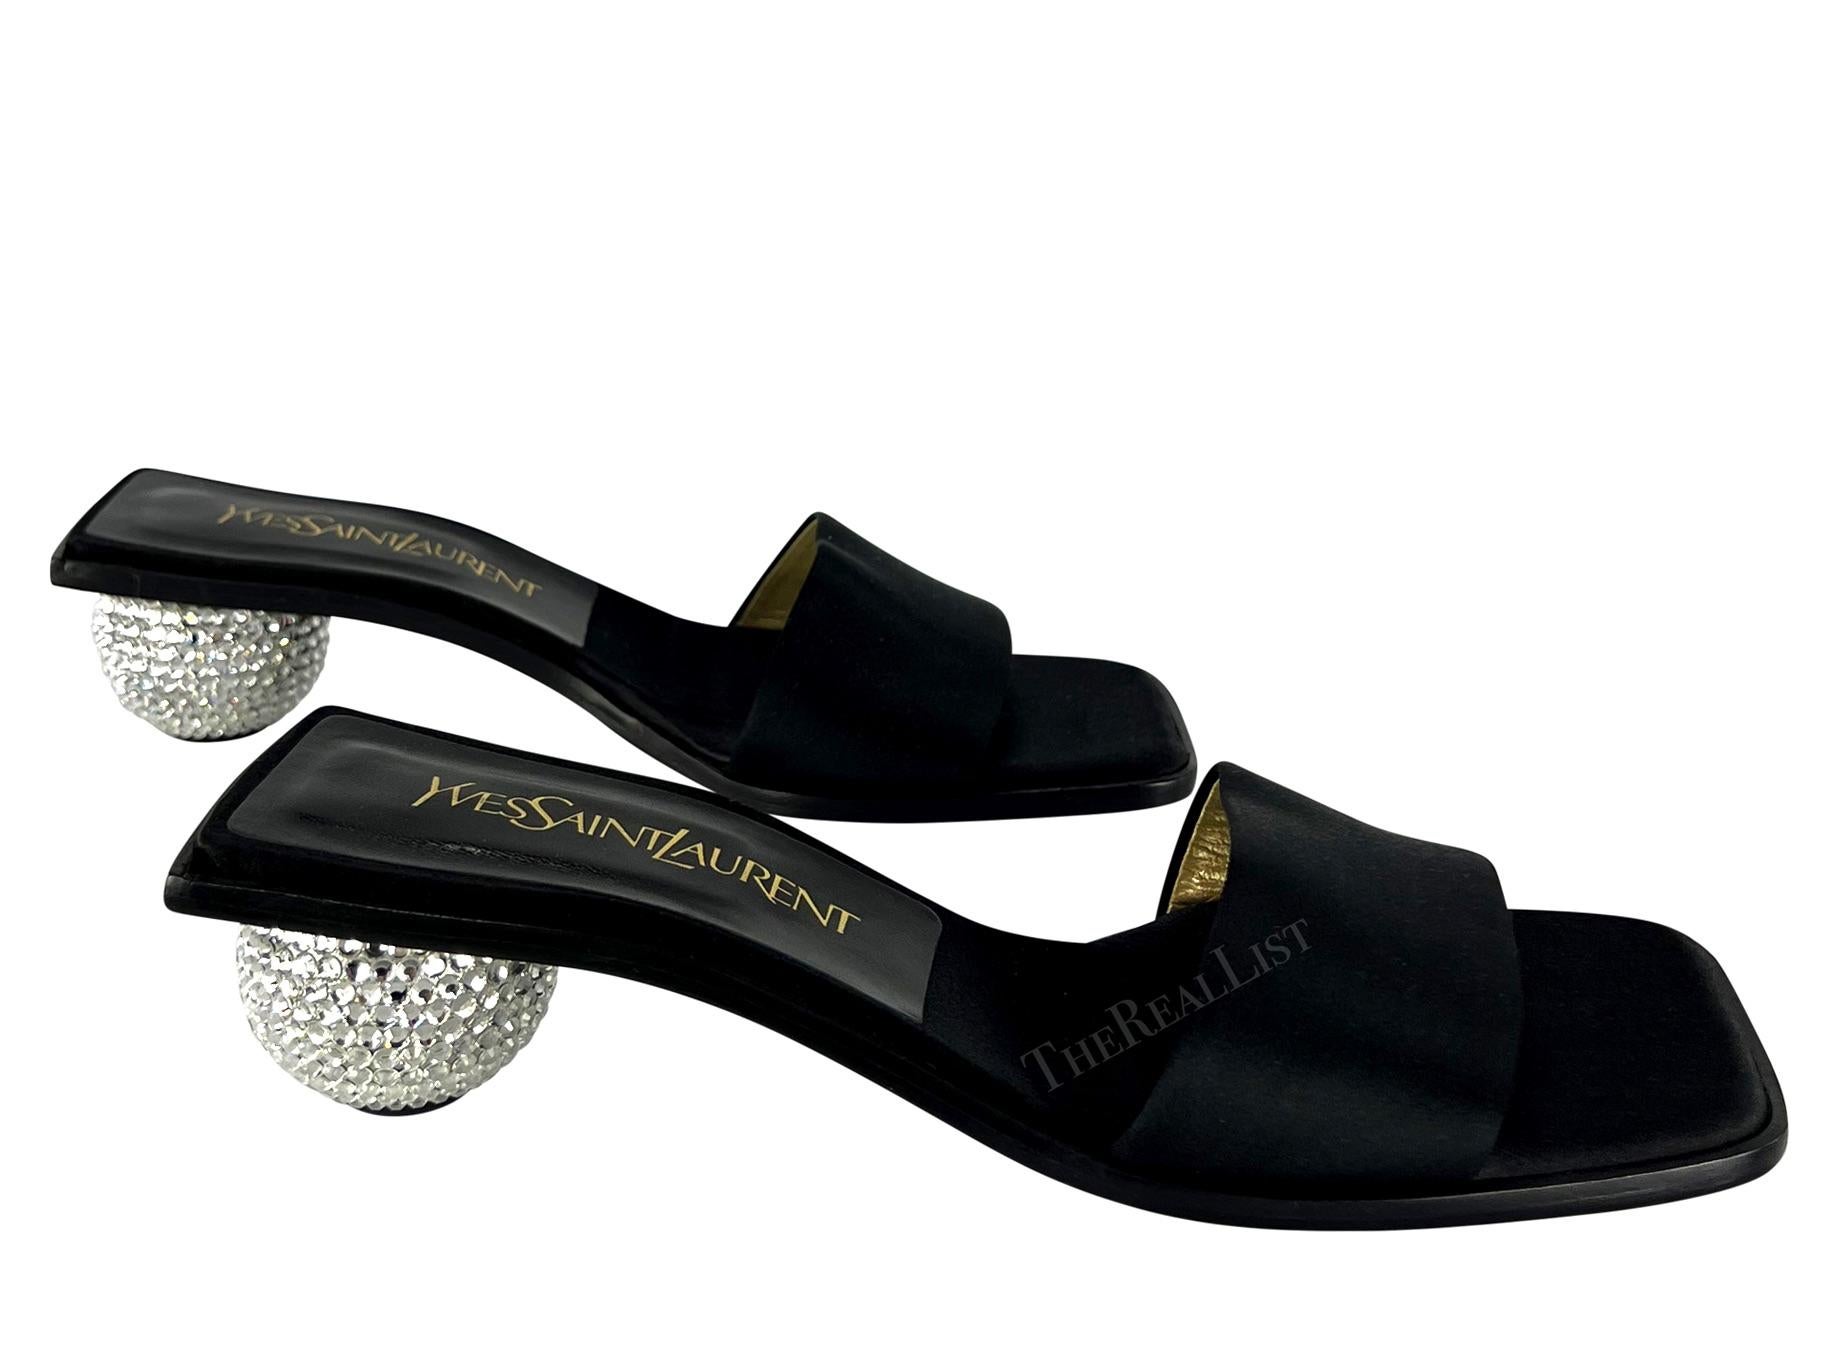 Elle présente une paire de sandales à talons en satin noir Yves Saint Laurent. Datant du début des années 1990, ces sandales chics jamais portées sont amplifiées par des talons ronds ornés de strass. Ajoutez à votre garde-robe ces rares sandales